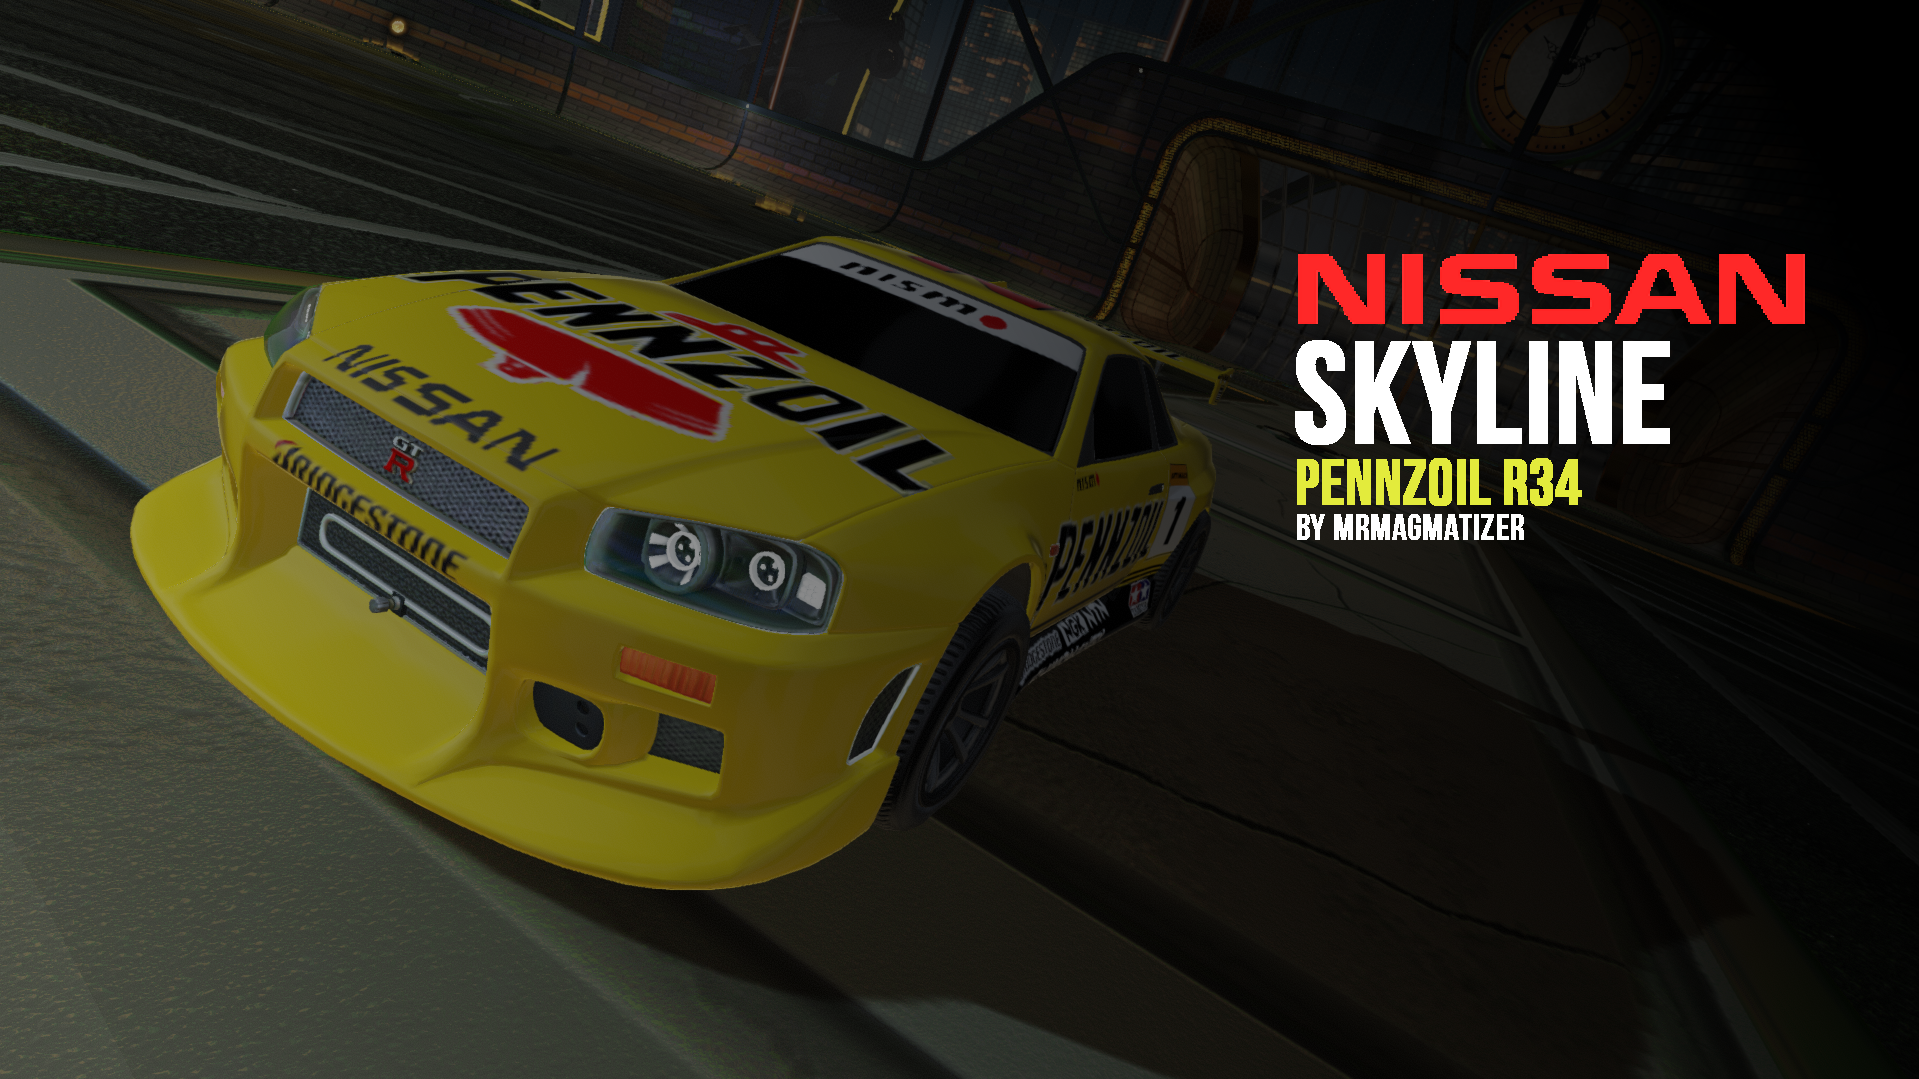 Pennzoil r34 Nissan Skyline